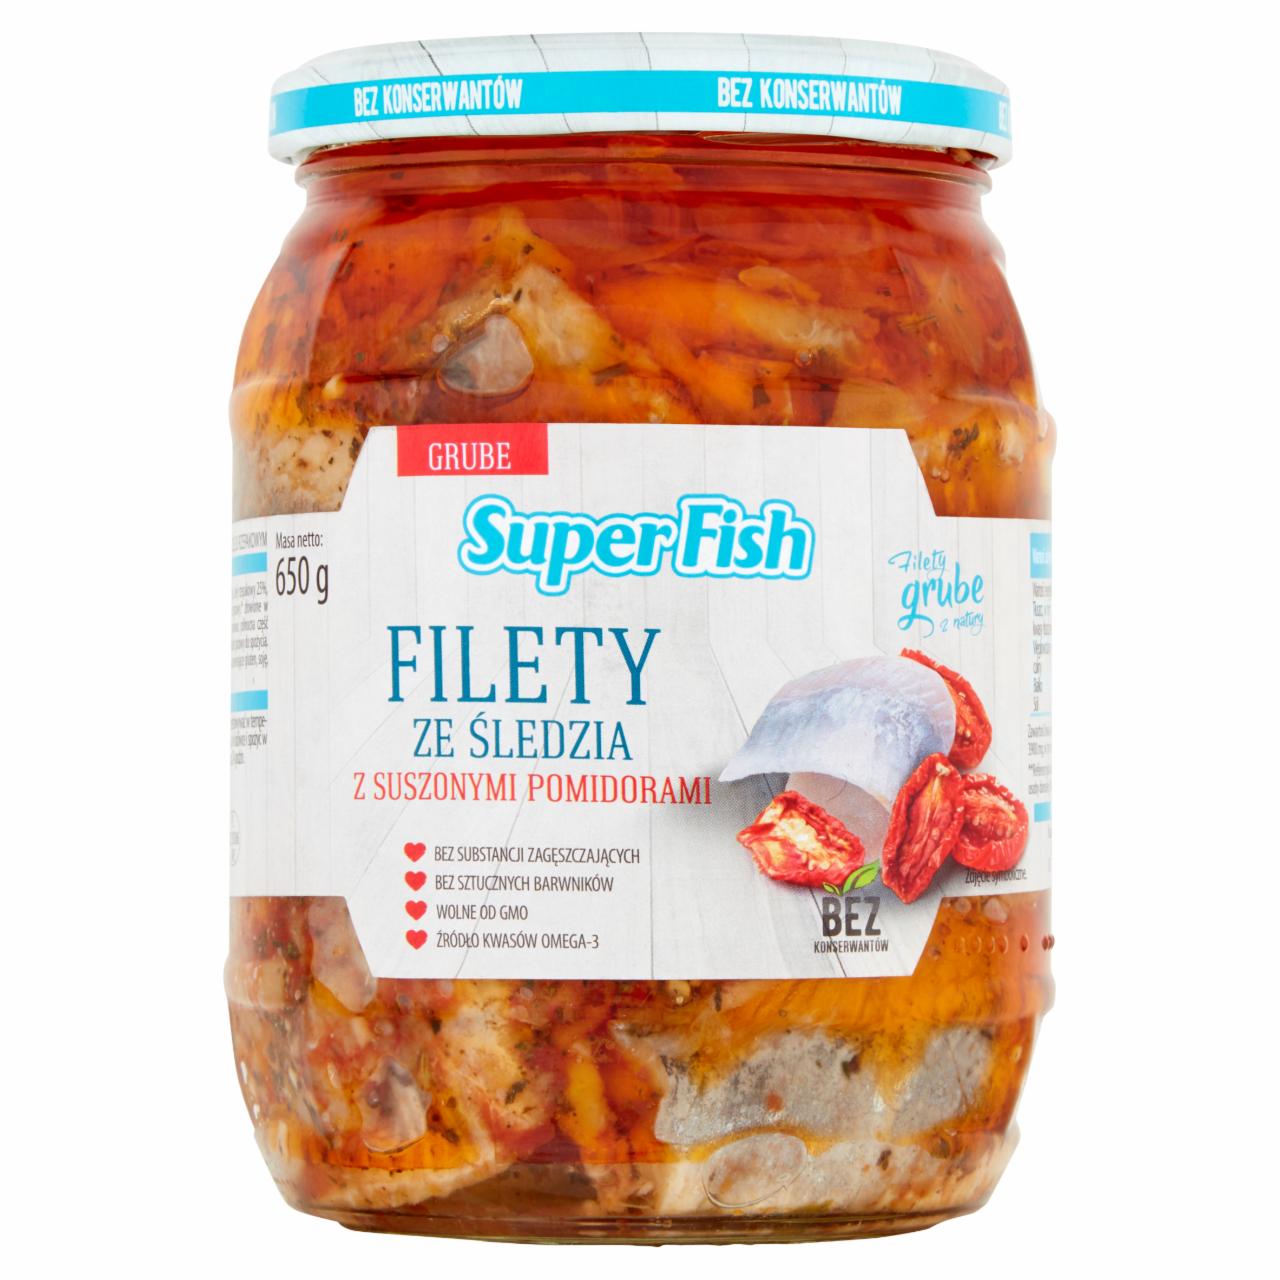 Zdjęcia - SuperFish Filety ze śledzia z suszonymi pomidorami 650 g